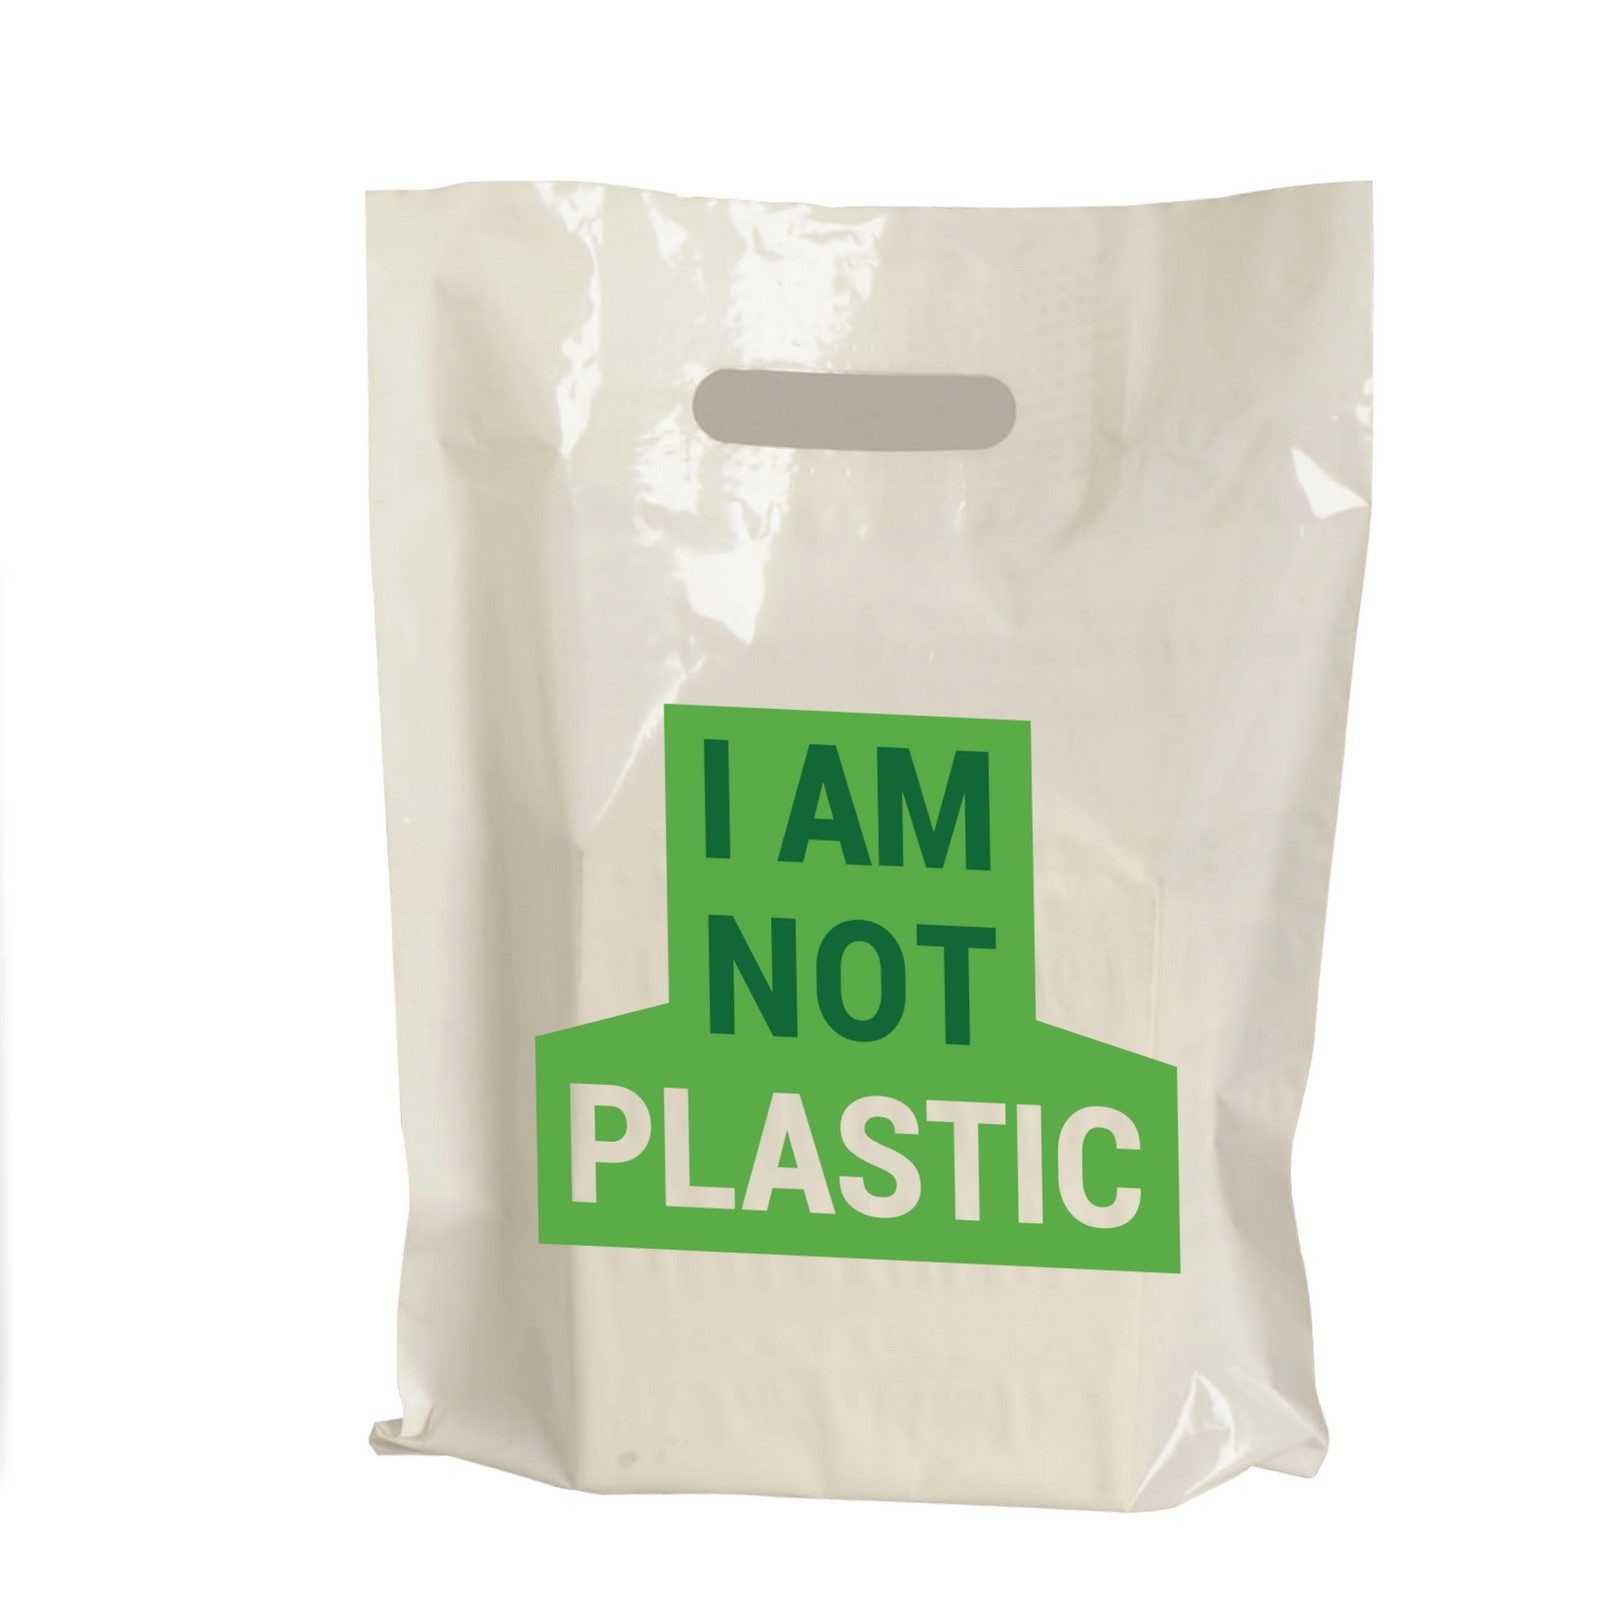 生物降解塑料袋